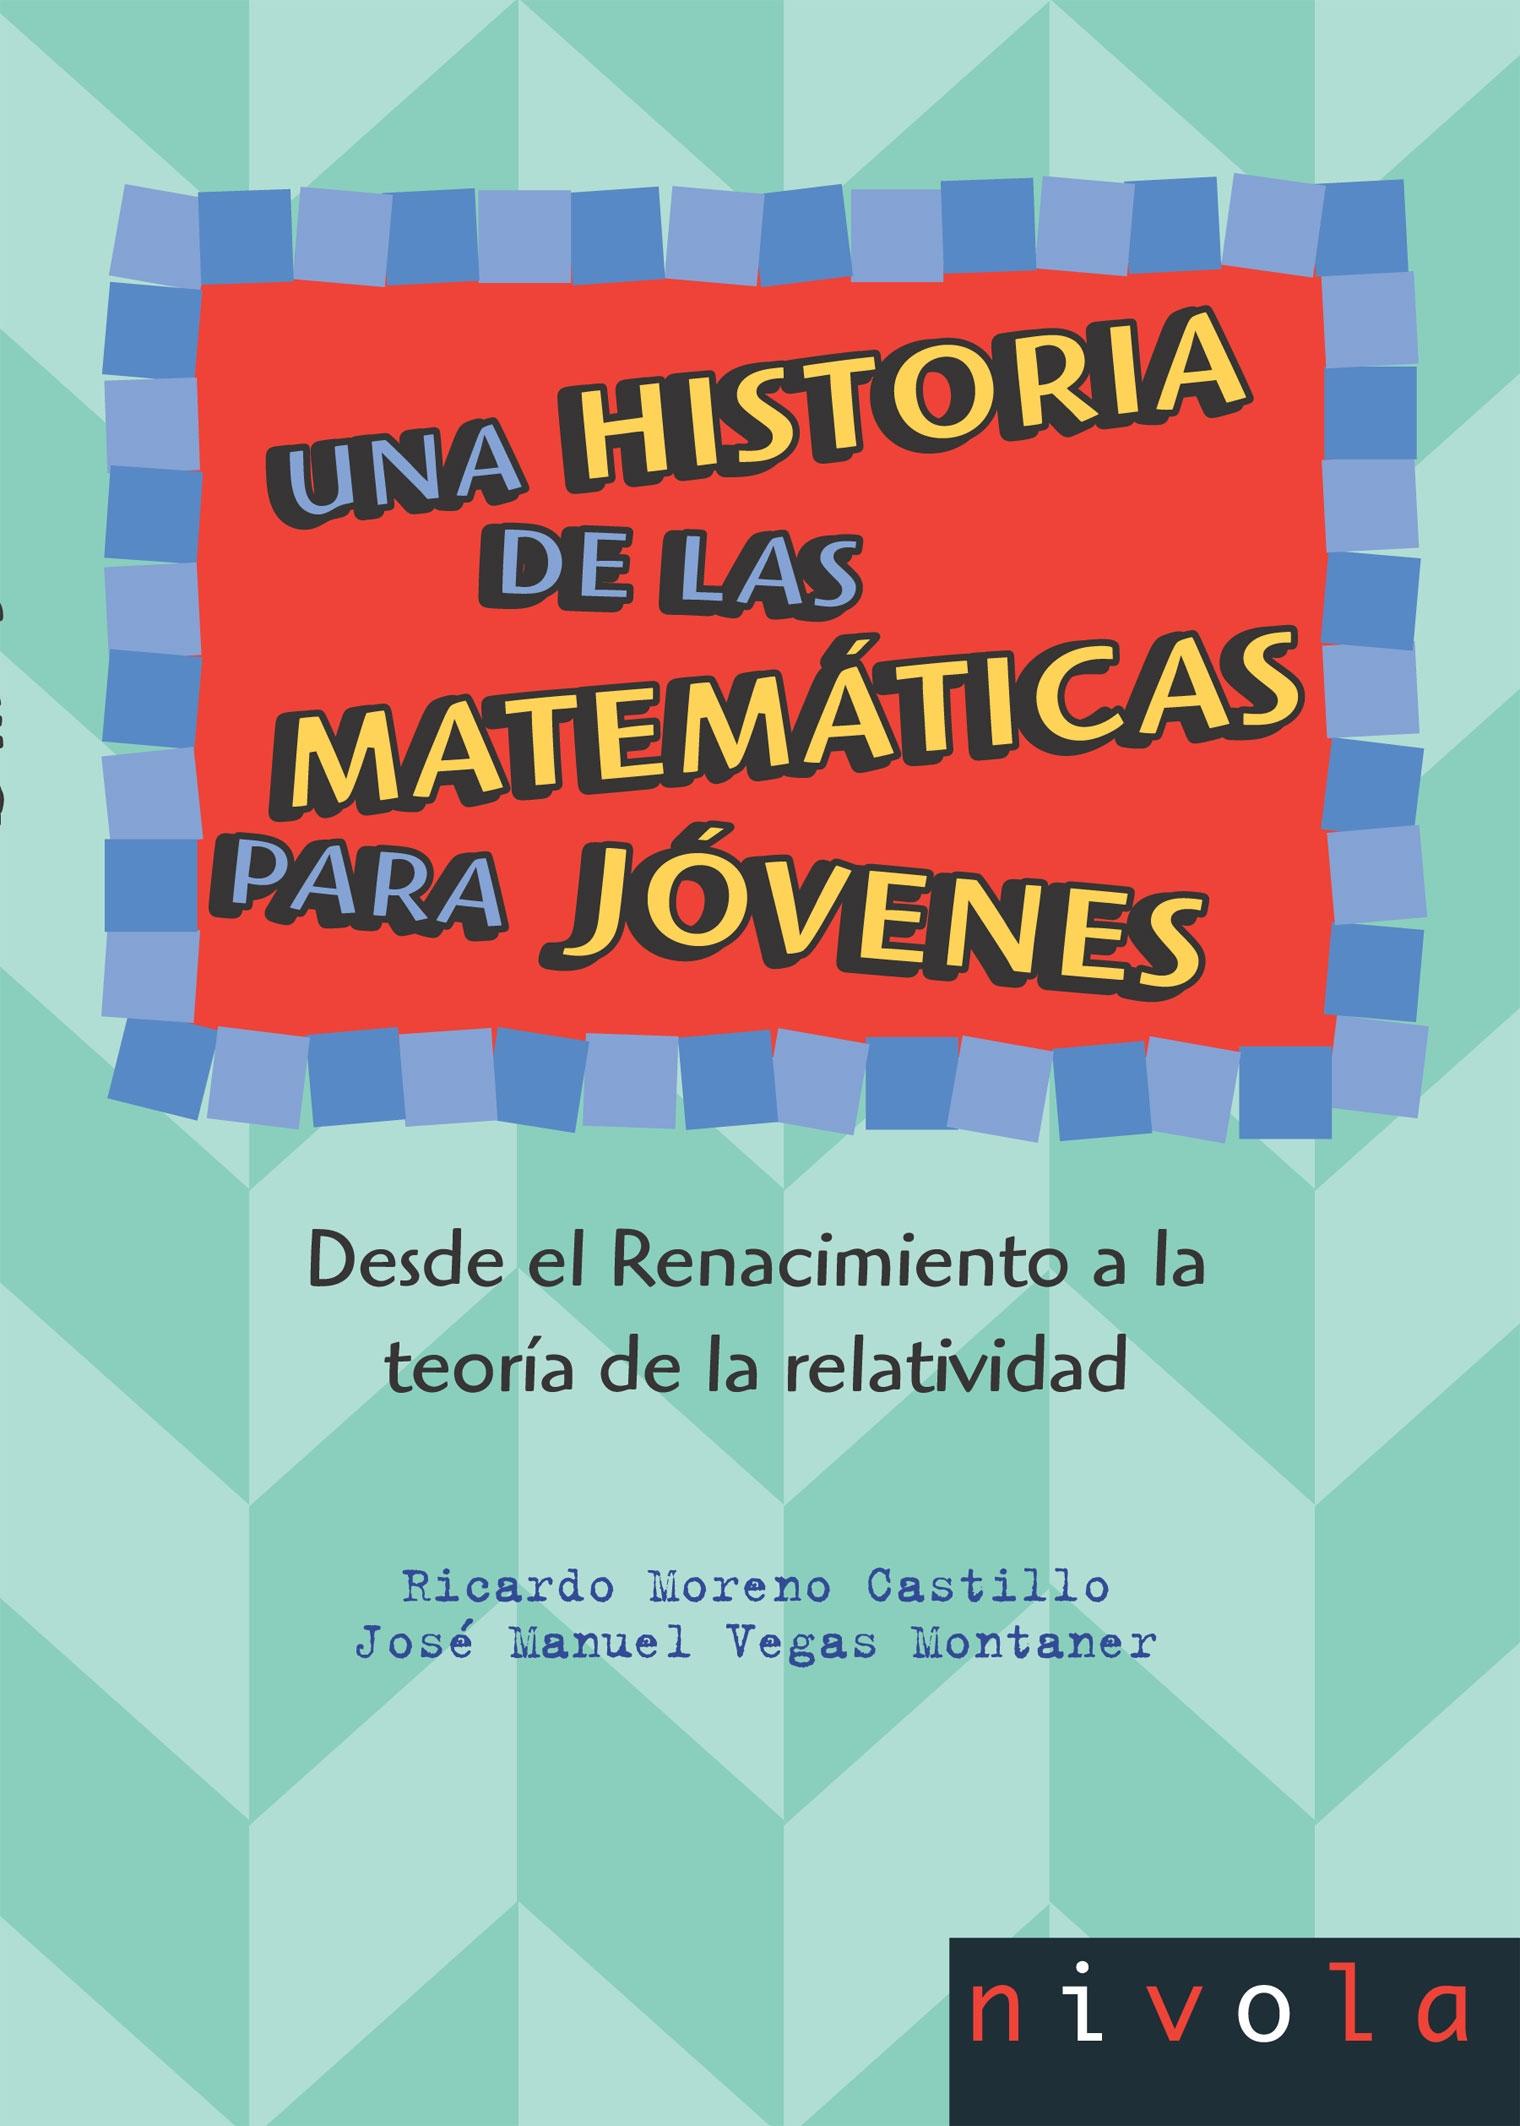 Una historia de las matemáticas para jóvenes II Tomo 2 "Desde el Renacimiento a la teoría de la relatividad". 